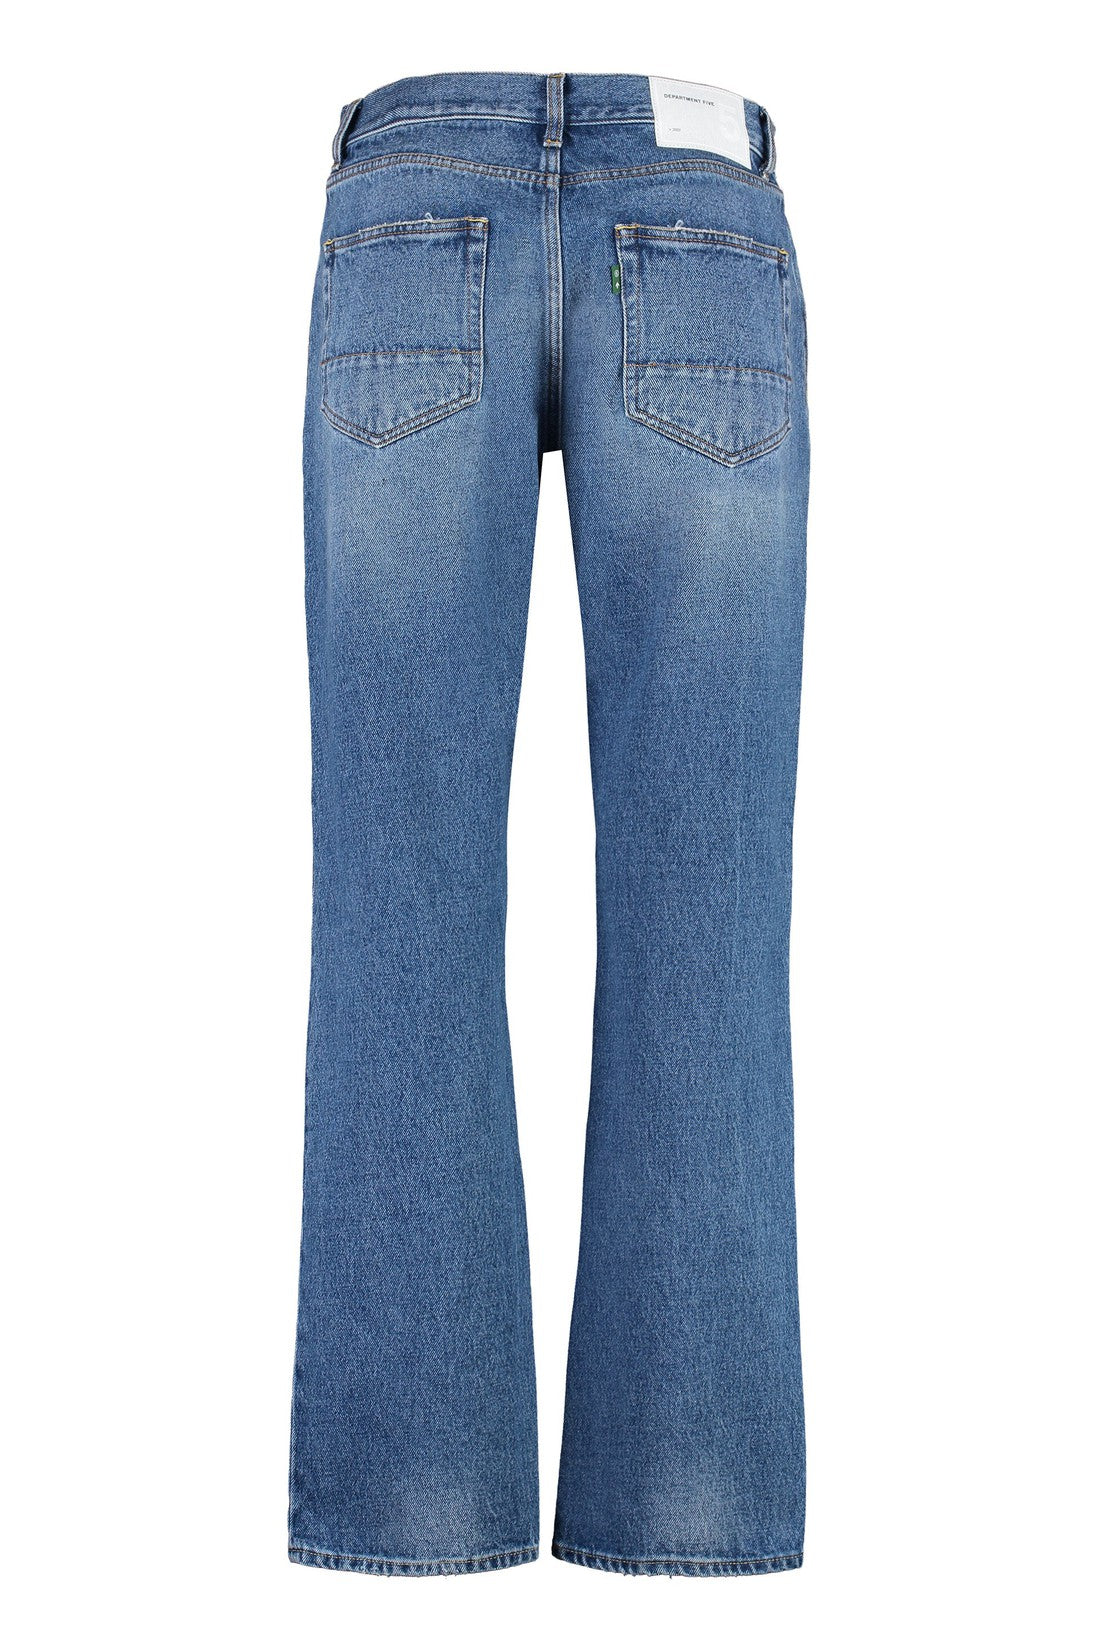 Department 5-OUTLET-SALE-Bowl jeans 5-pocket straight-leg jeans-ARCHIVIST